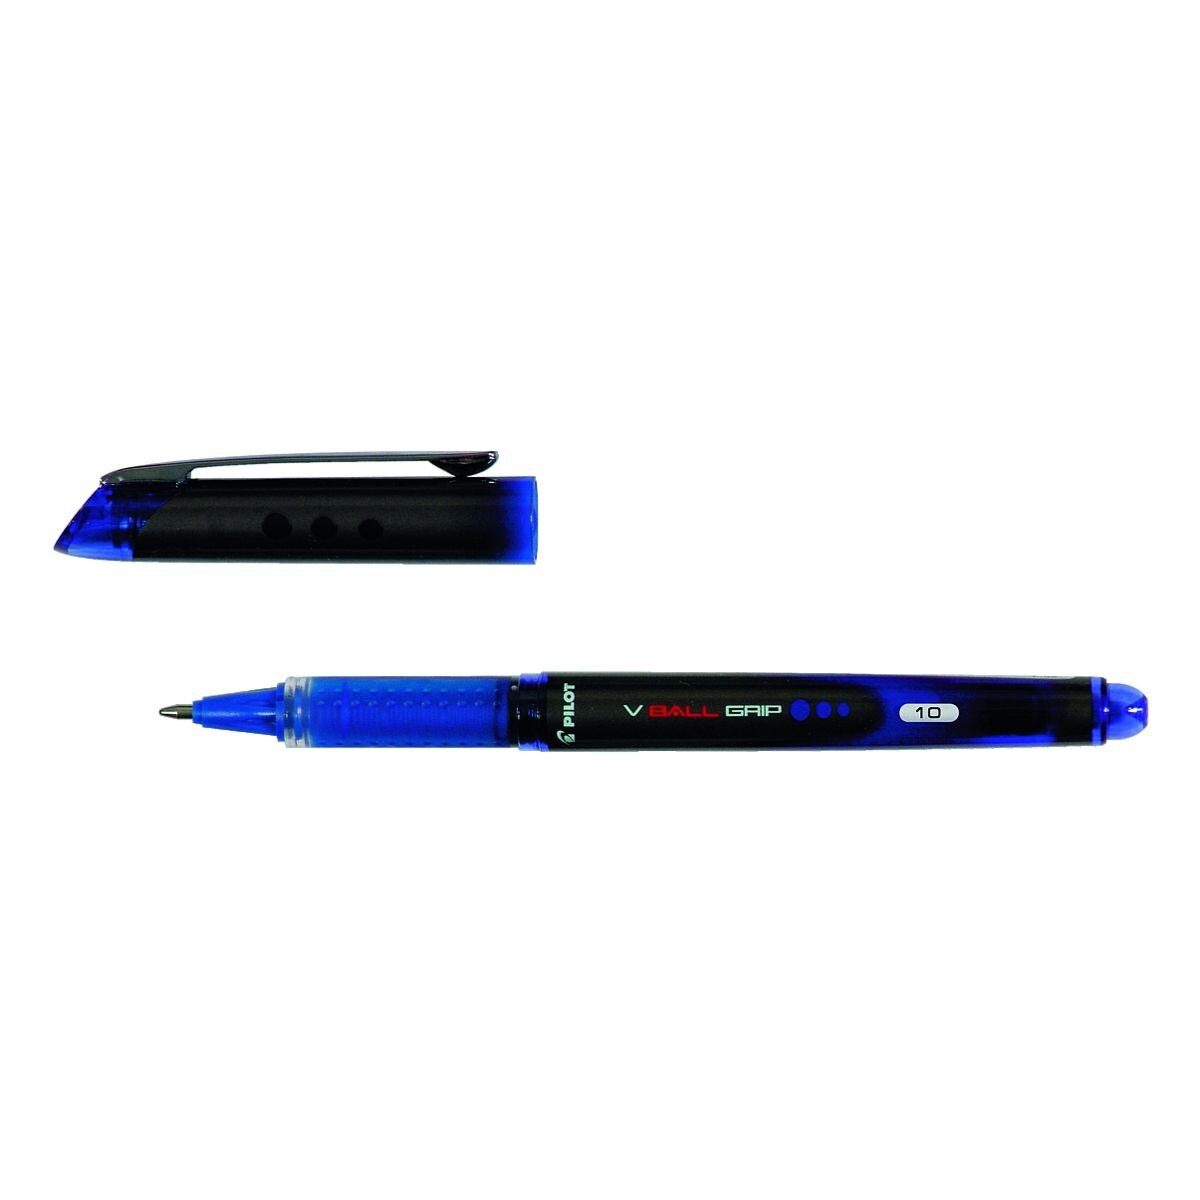 Tintenroller blau Strickstärke PILOT mm 10 VBall Grip (B), 0,6